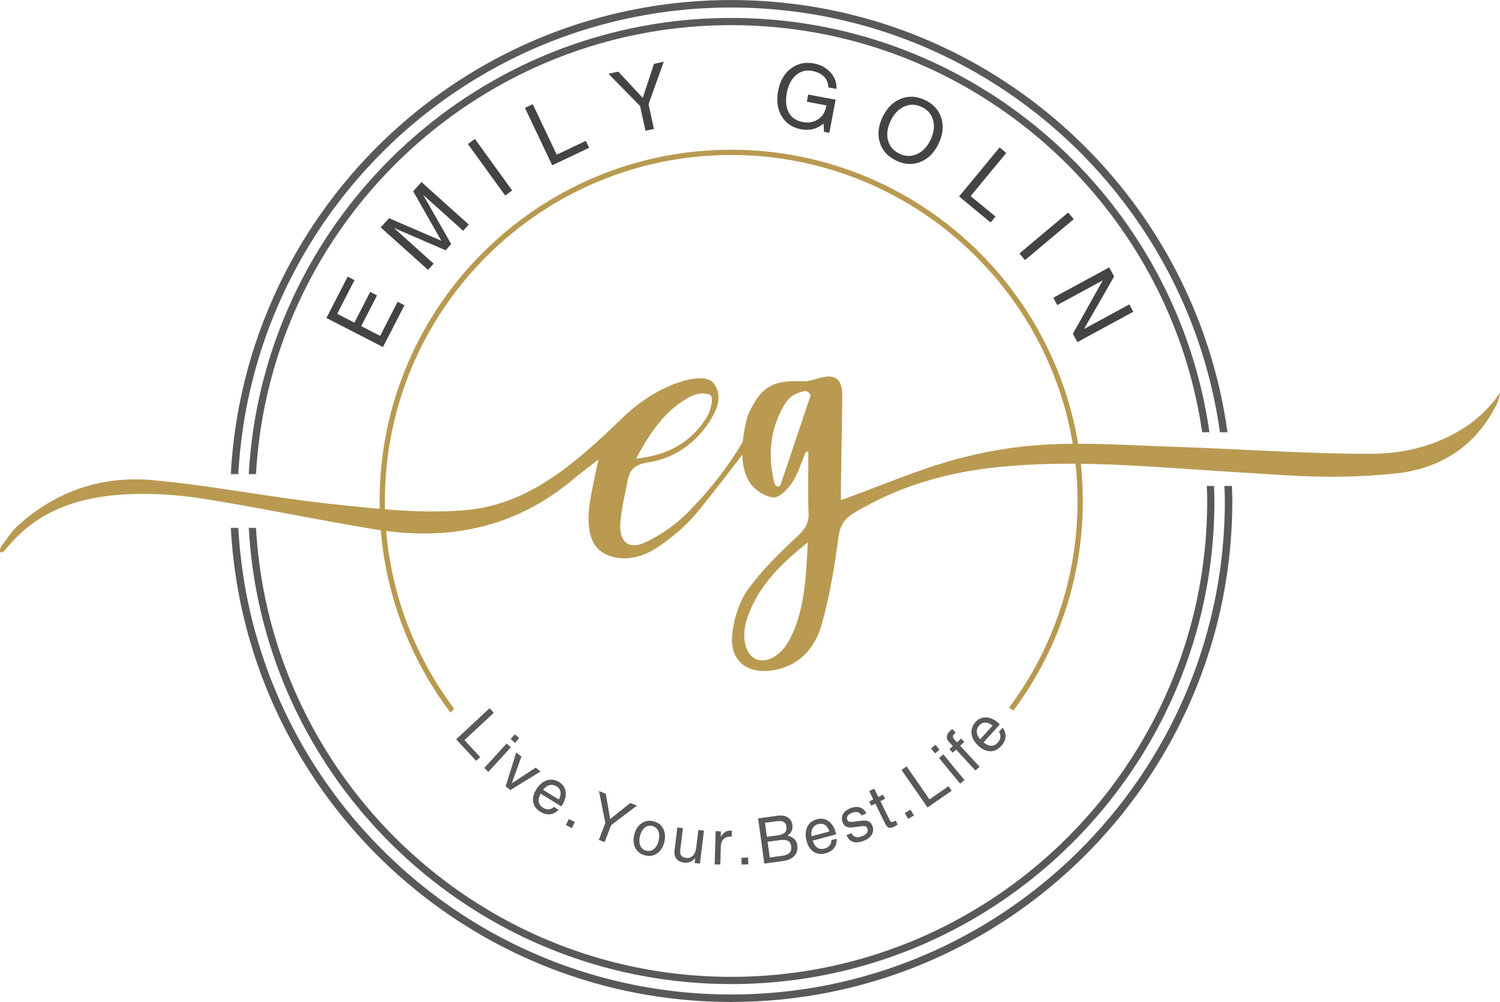 Emily Golin